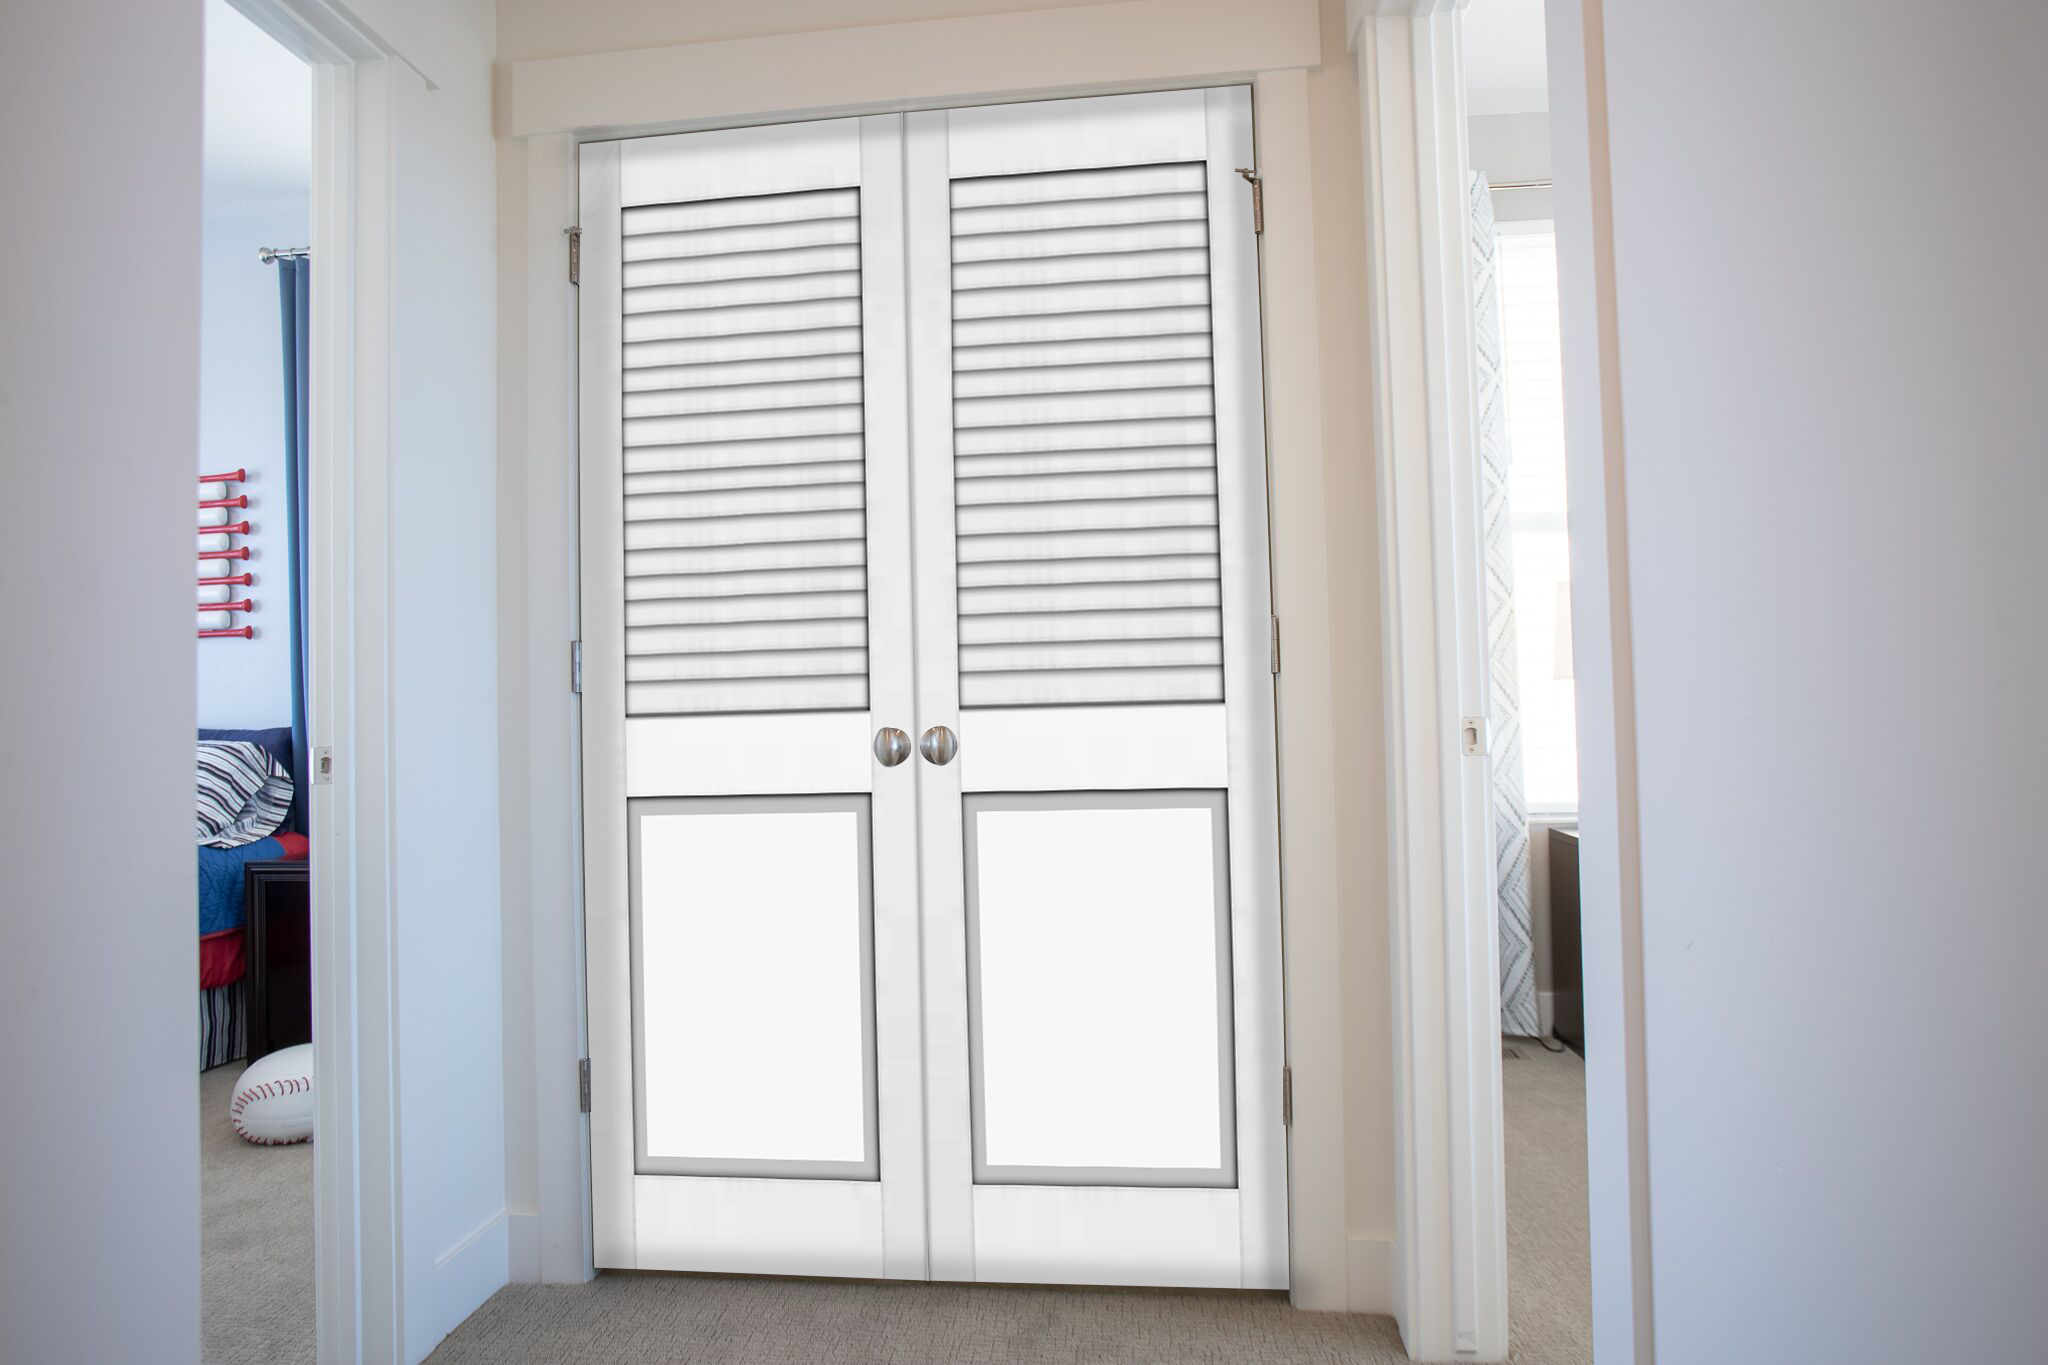 GOCHUSX Cafe Swinging Doors, Louvered Swing Door, Solid Wood Cowboy Door  Partition Door, Auto Close, Customizable (Color : White, Size : 90x60cm) -  Amazon.com